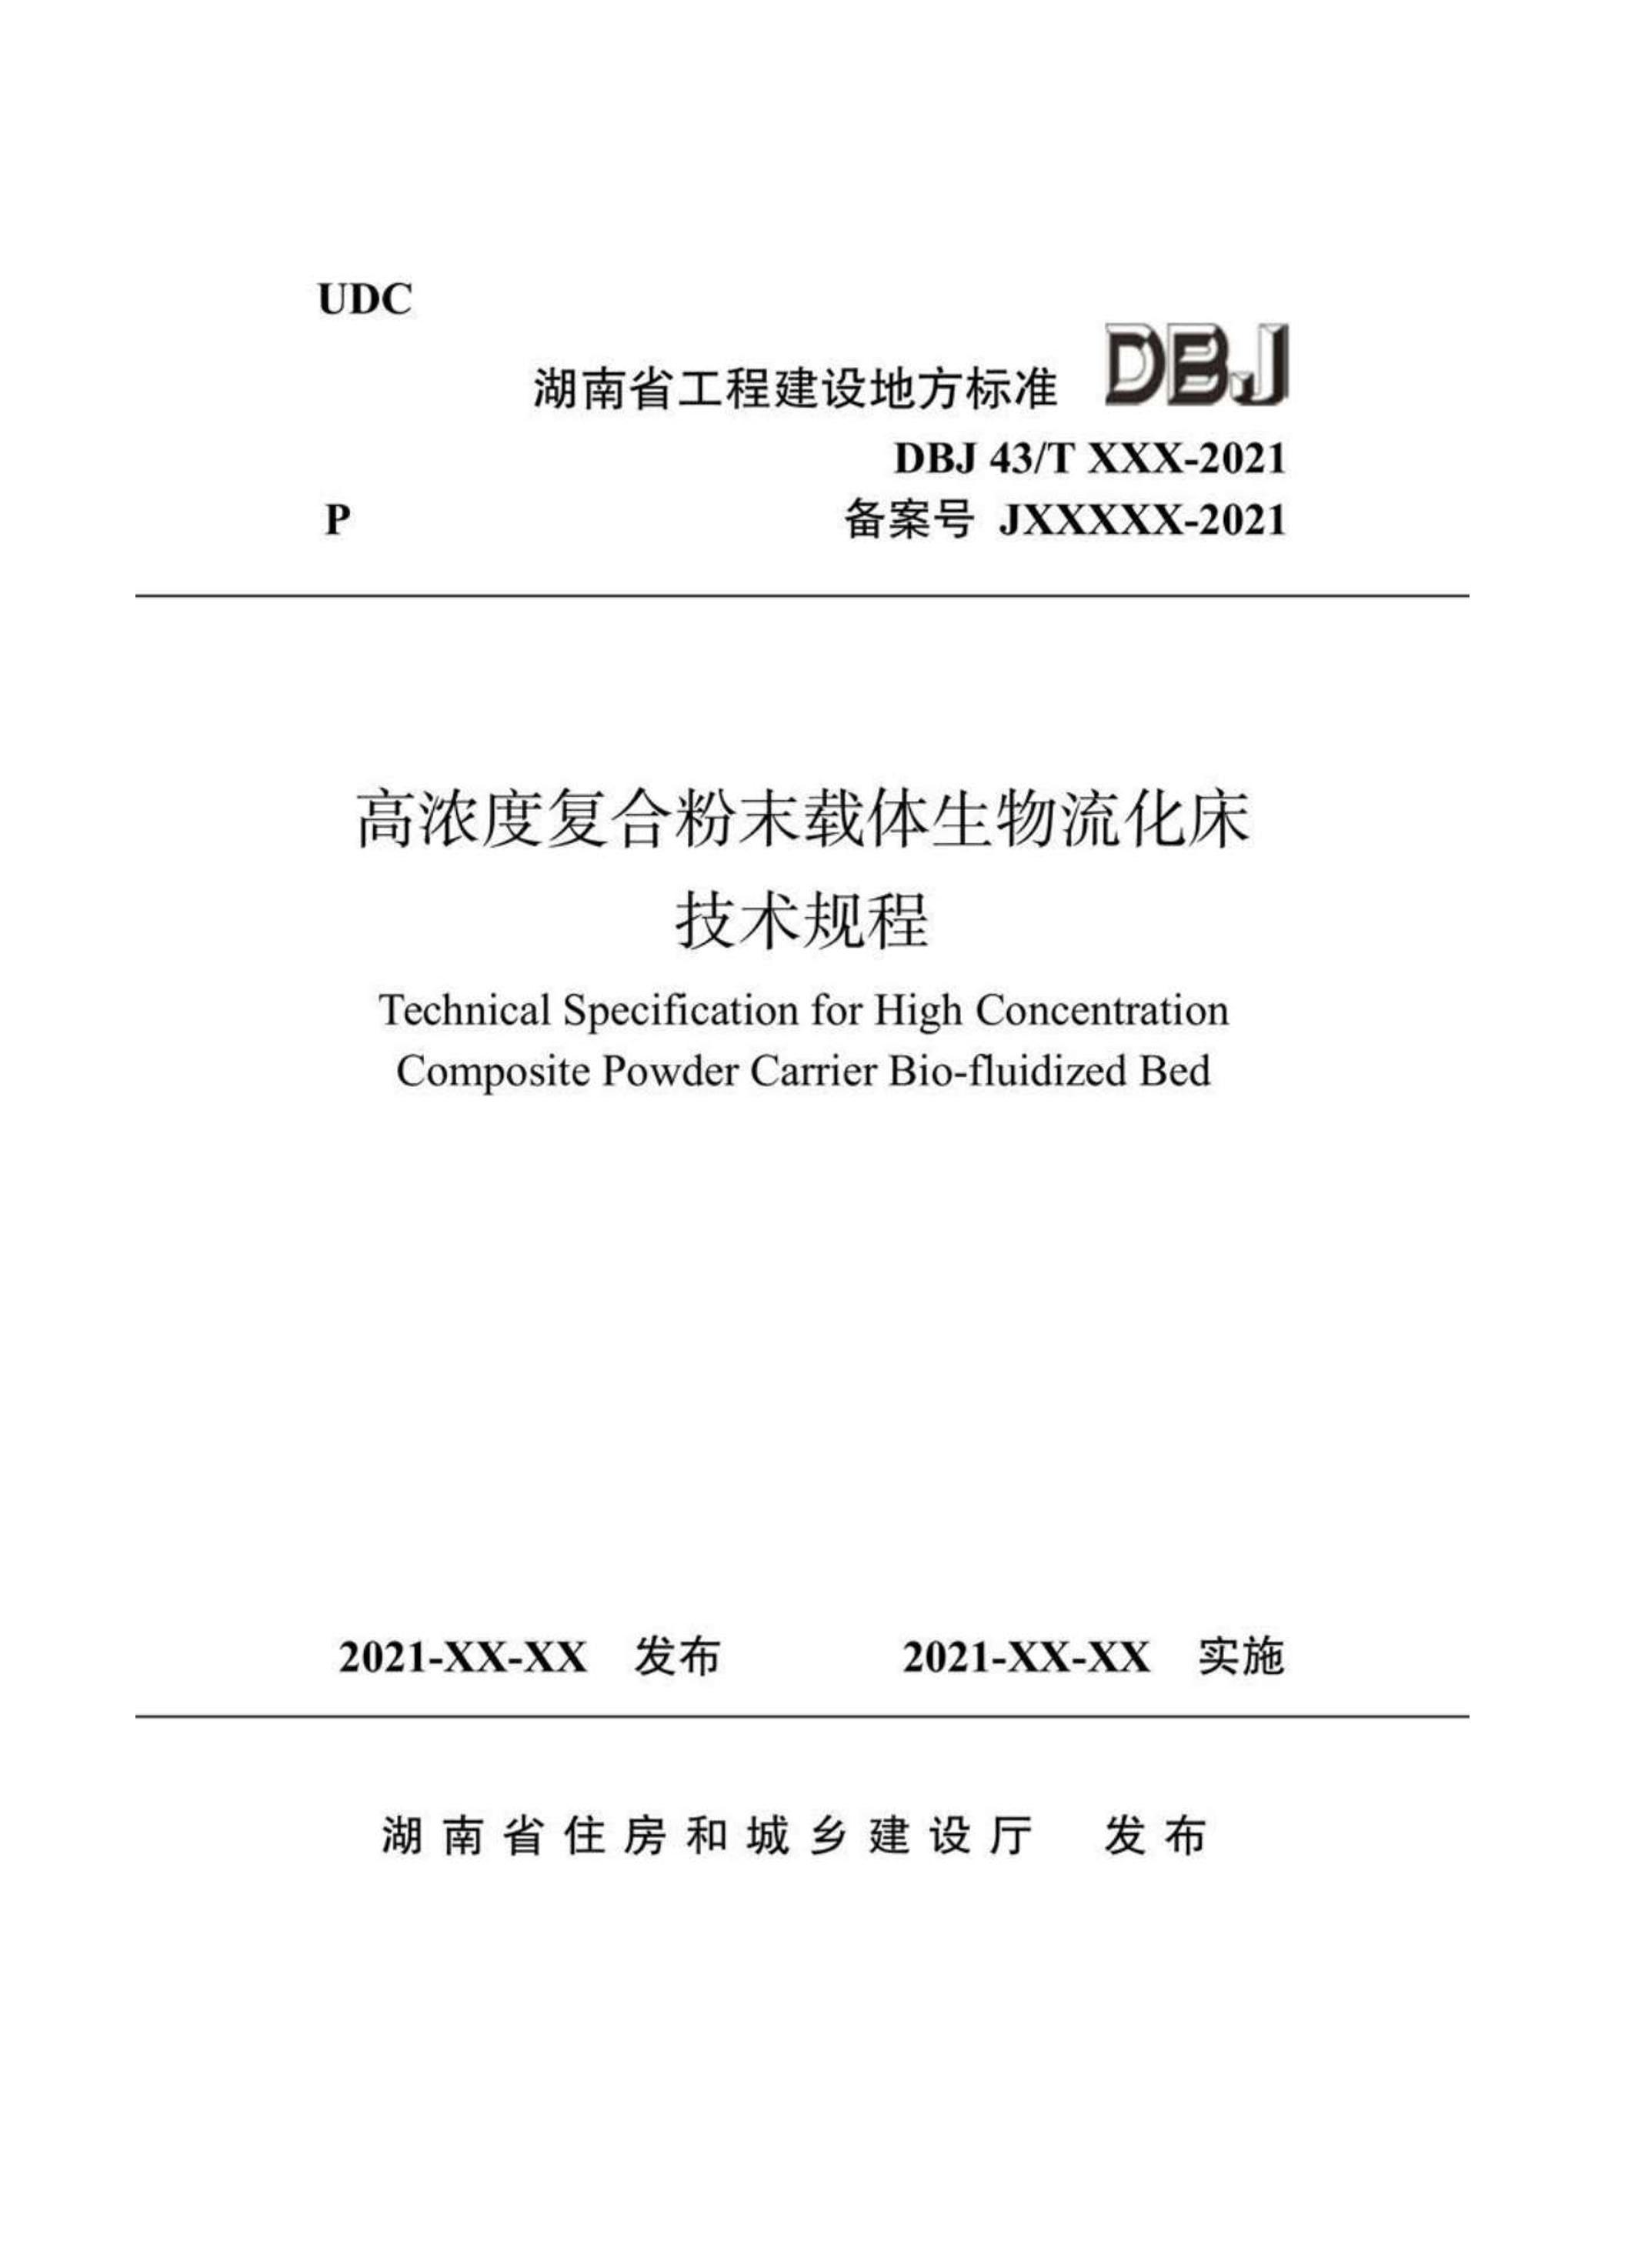 DBJ43T 370-2021 ŨȸϷĩ.pdf1ҳ